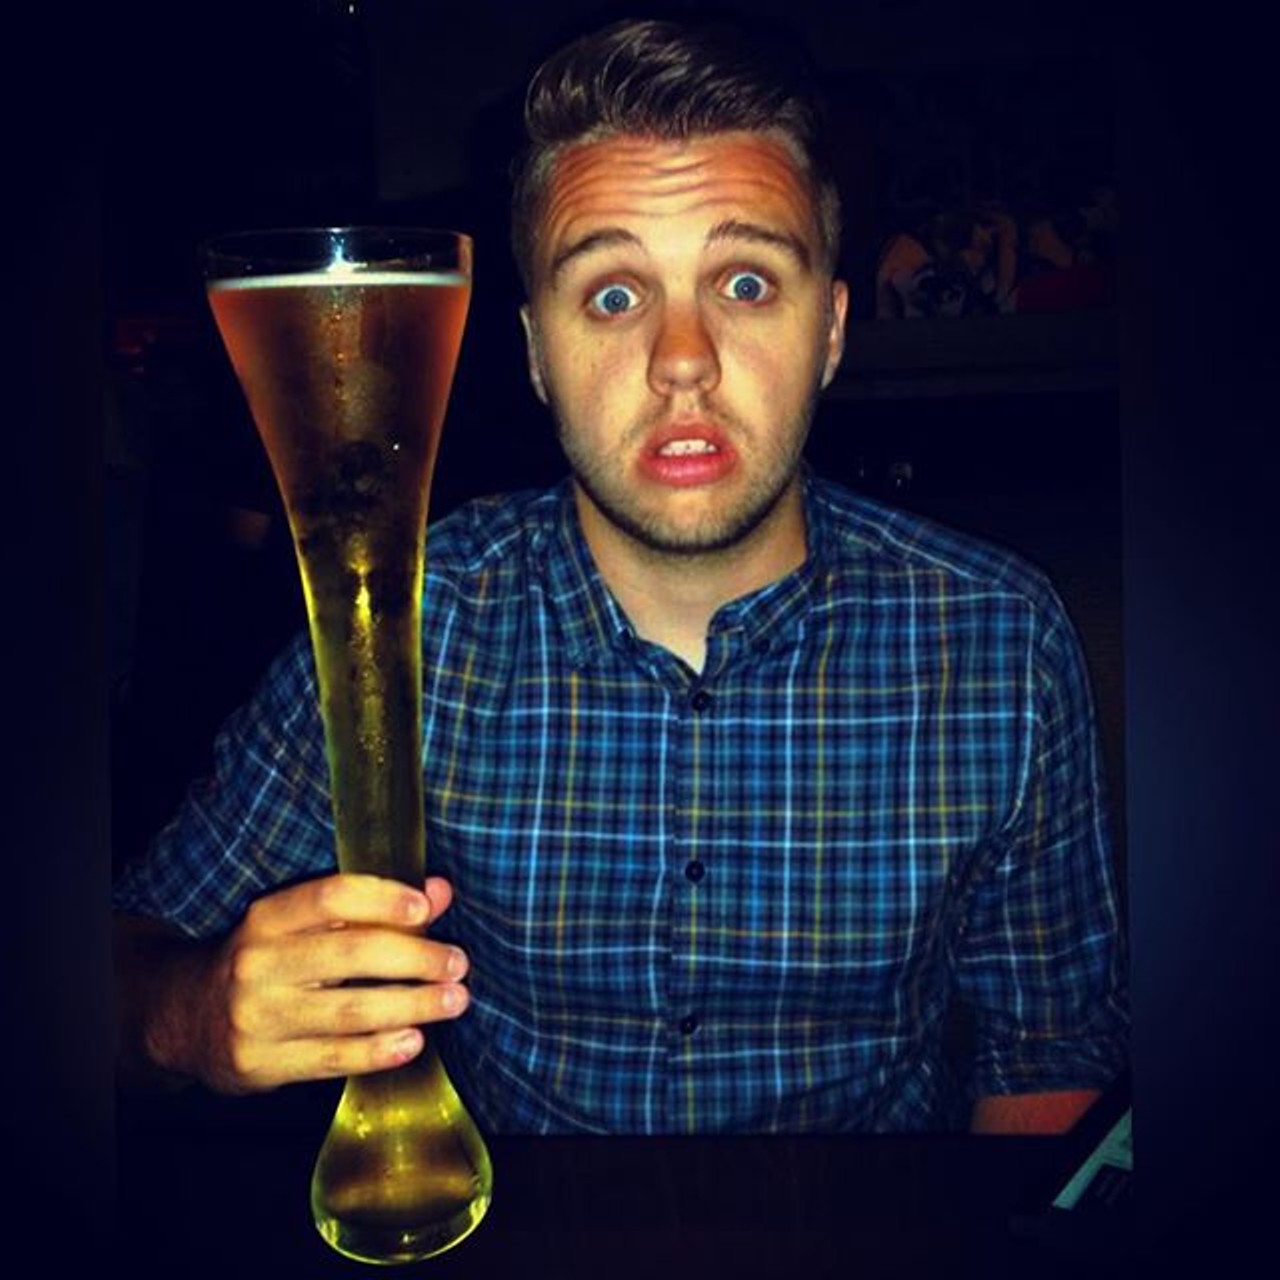 Instagram user dsjones89 drank this yard of beer.